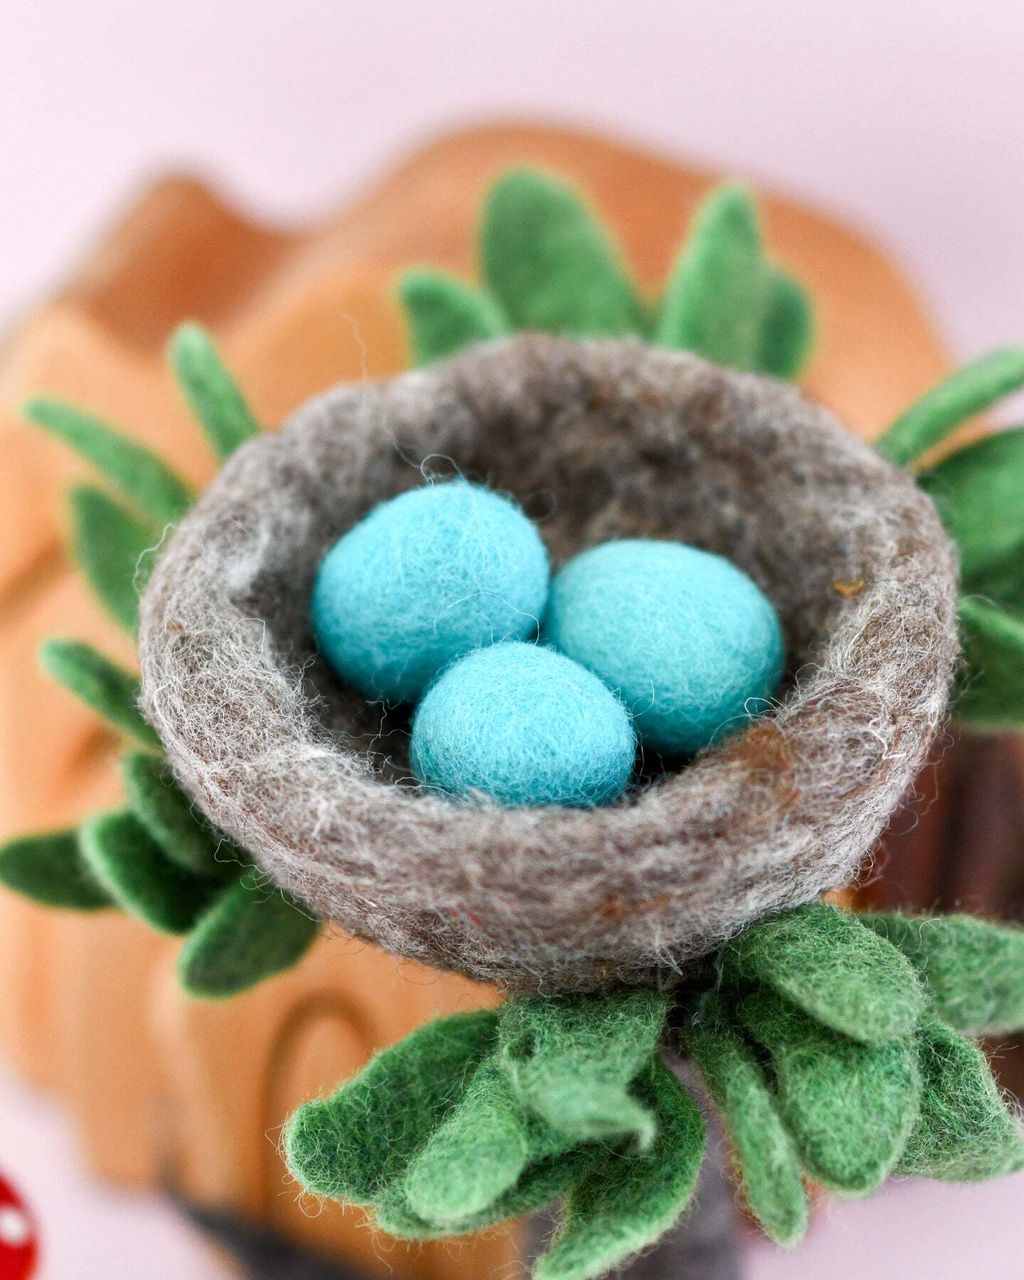 felt-nest-with-small-blue-eggs-3